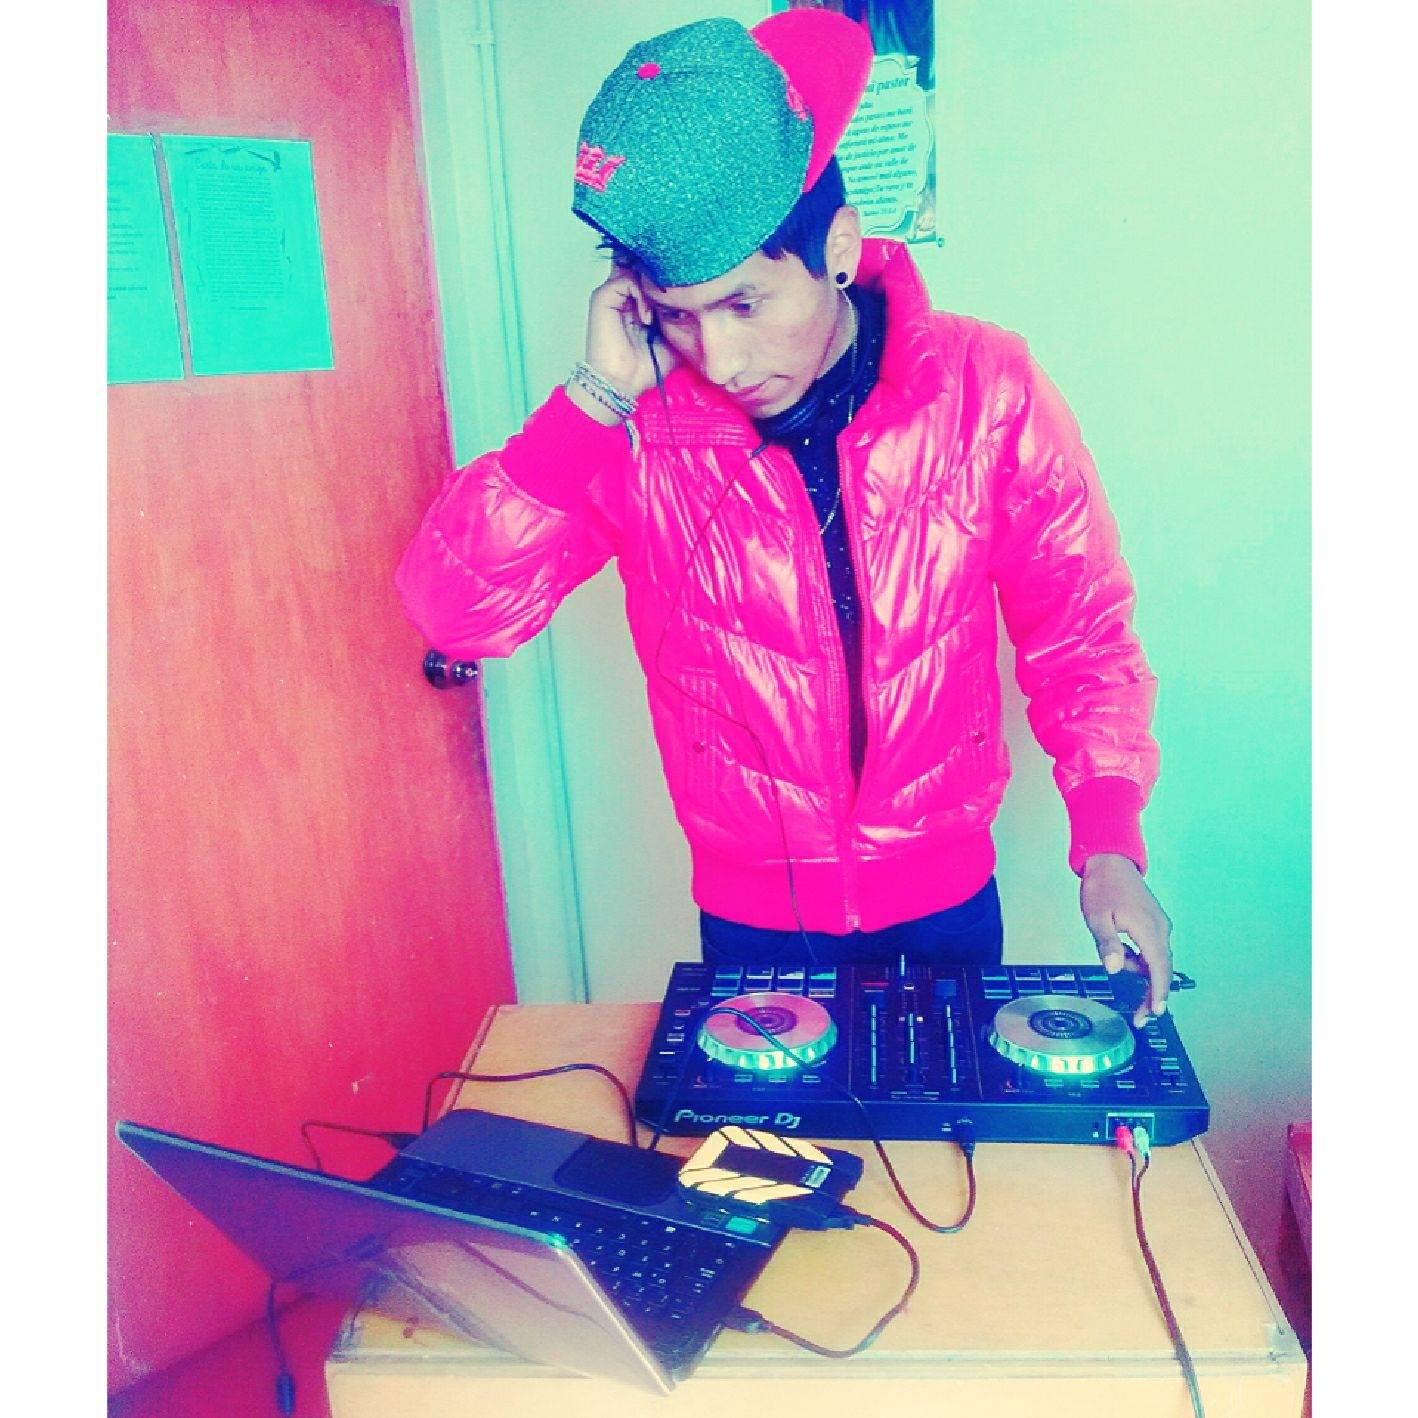 DJ Colecxion